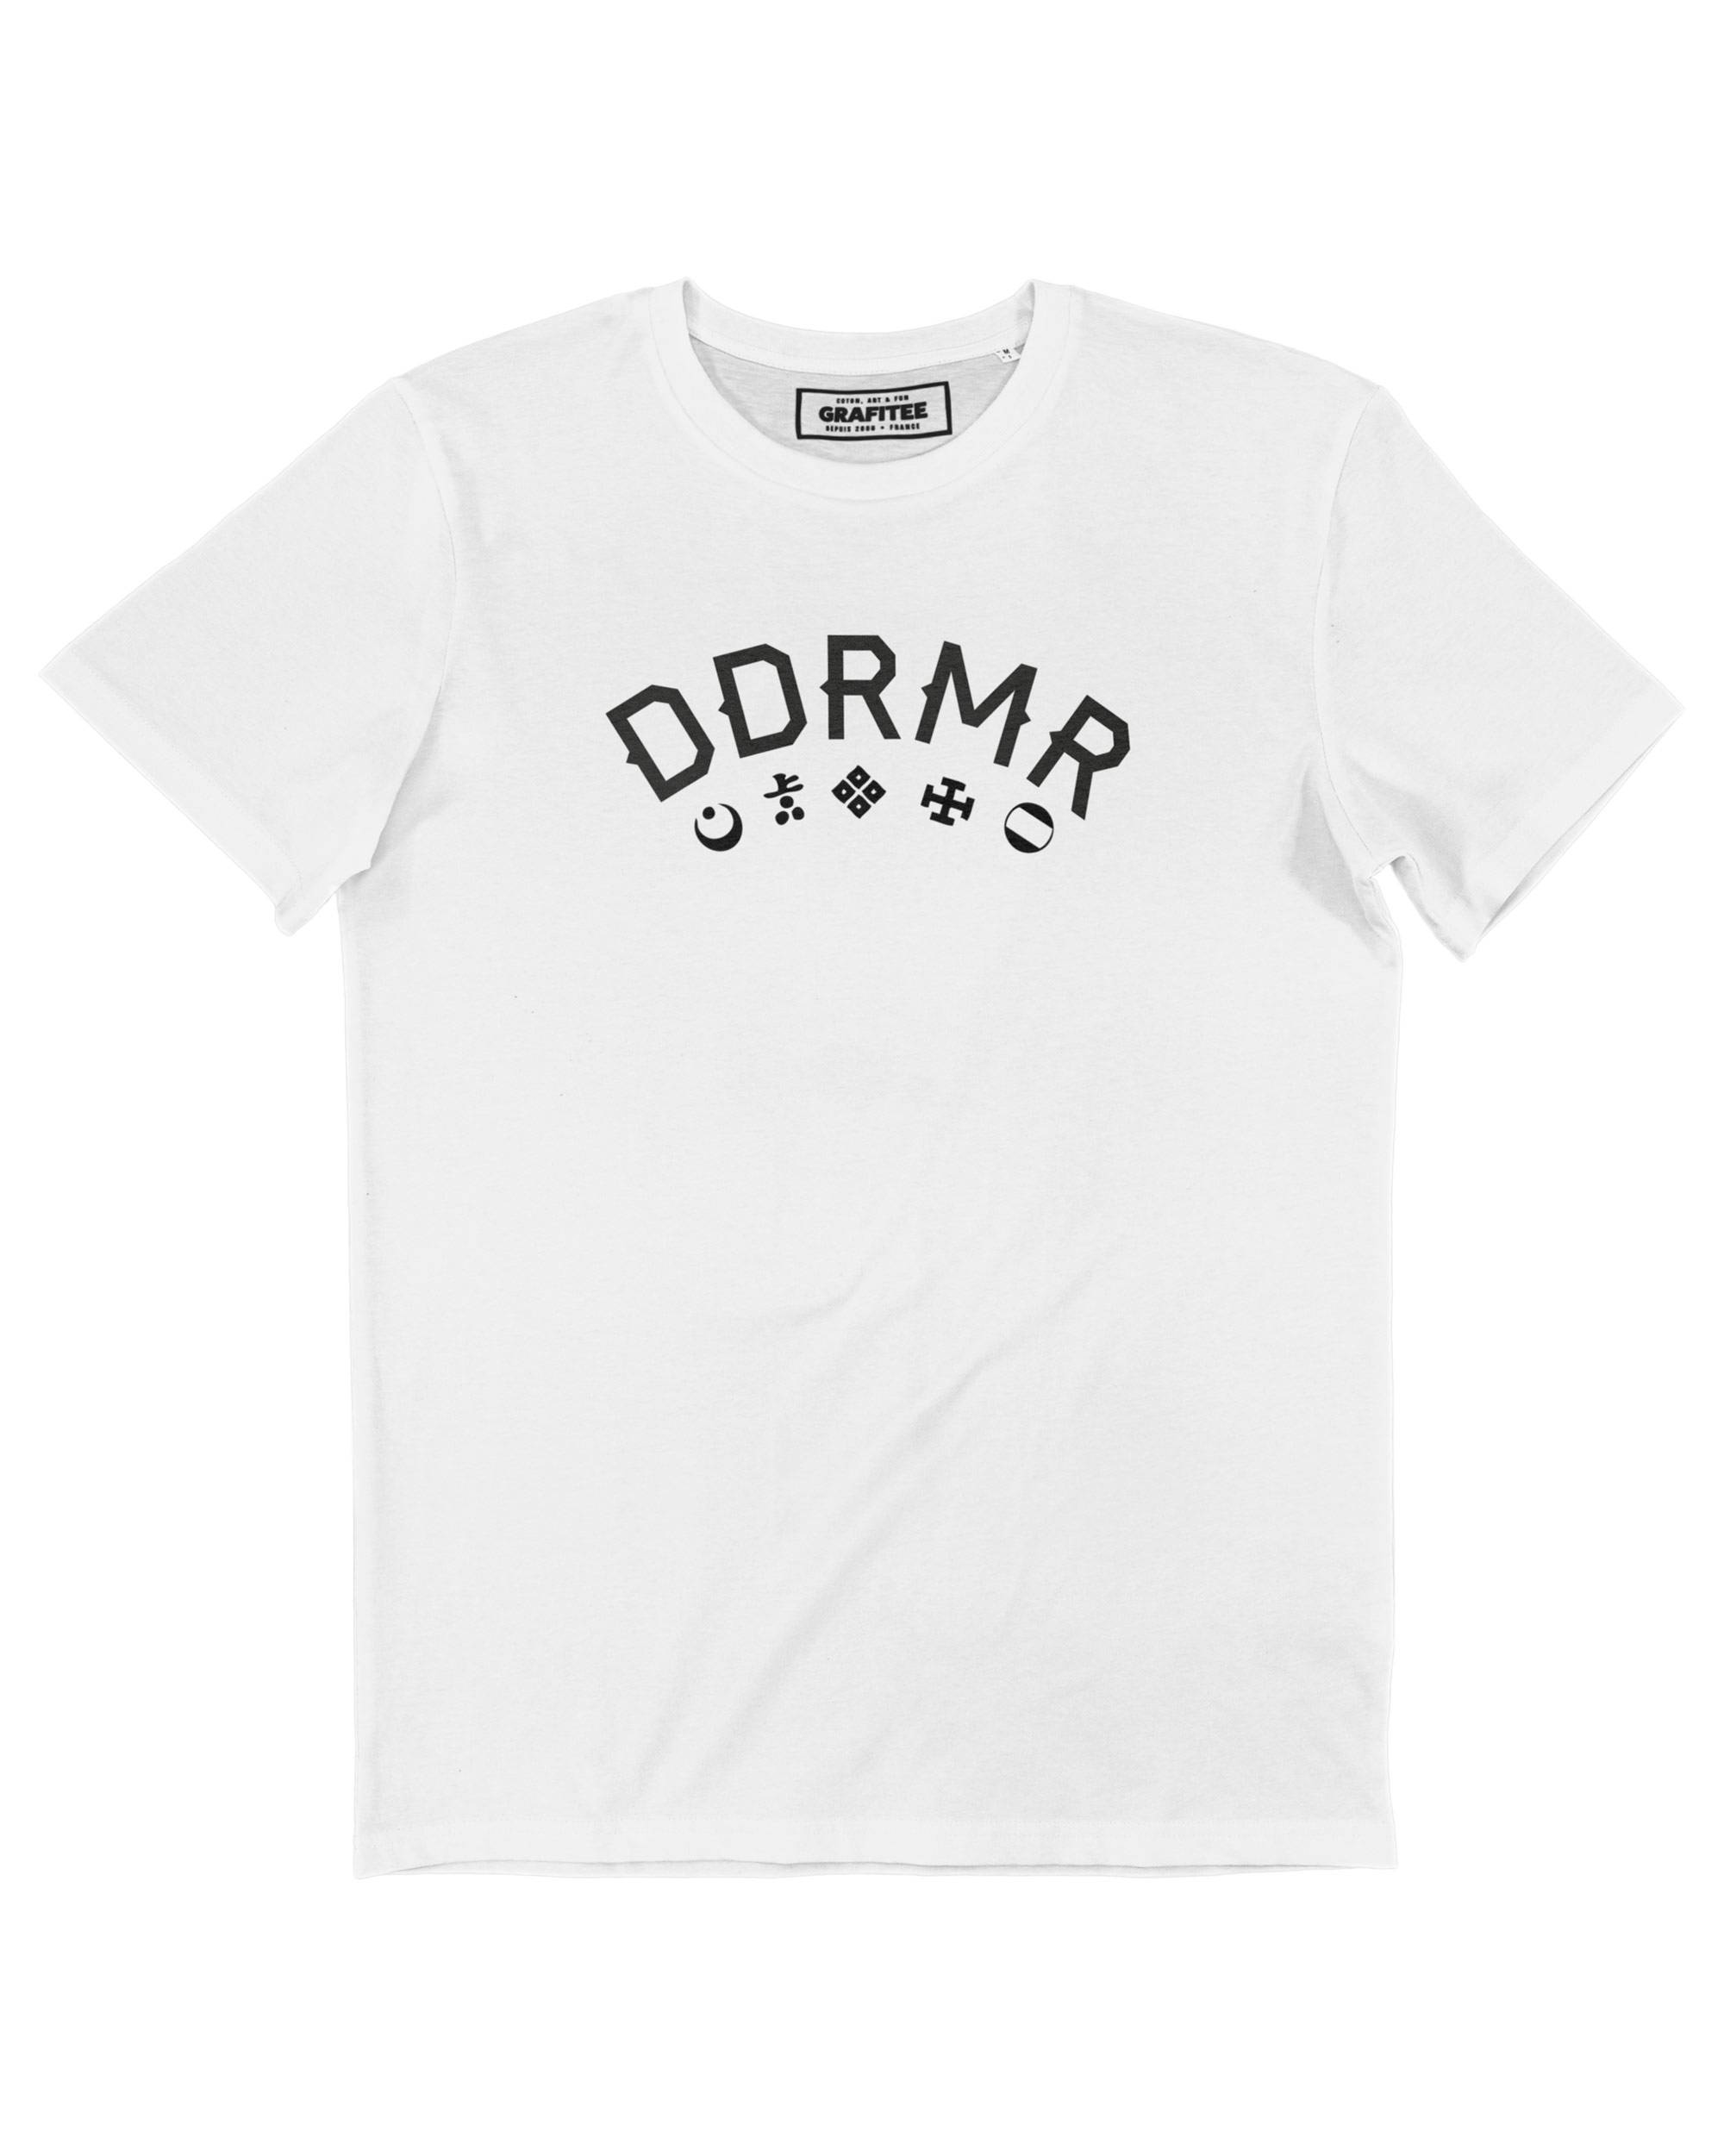 T-shirt DDRMR Grafitee